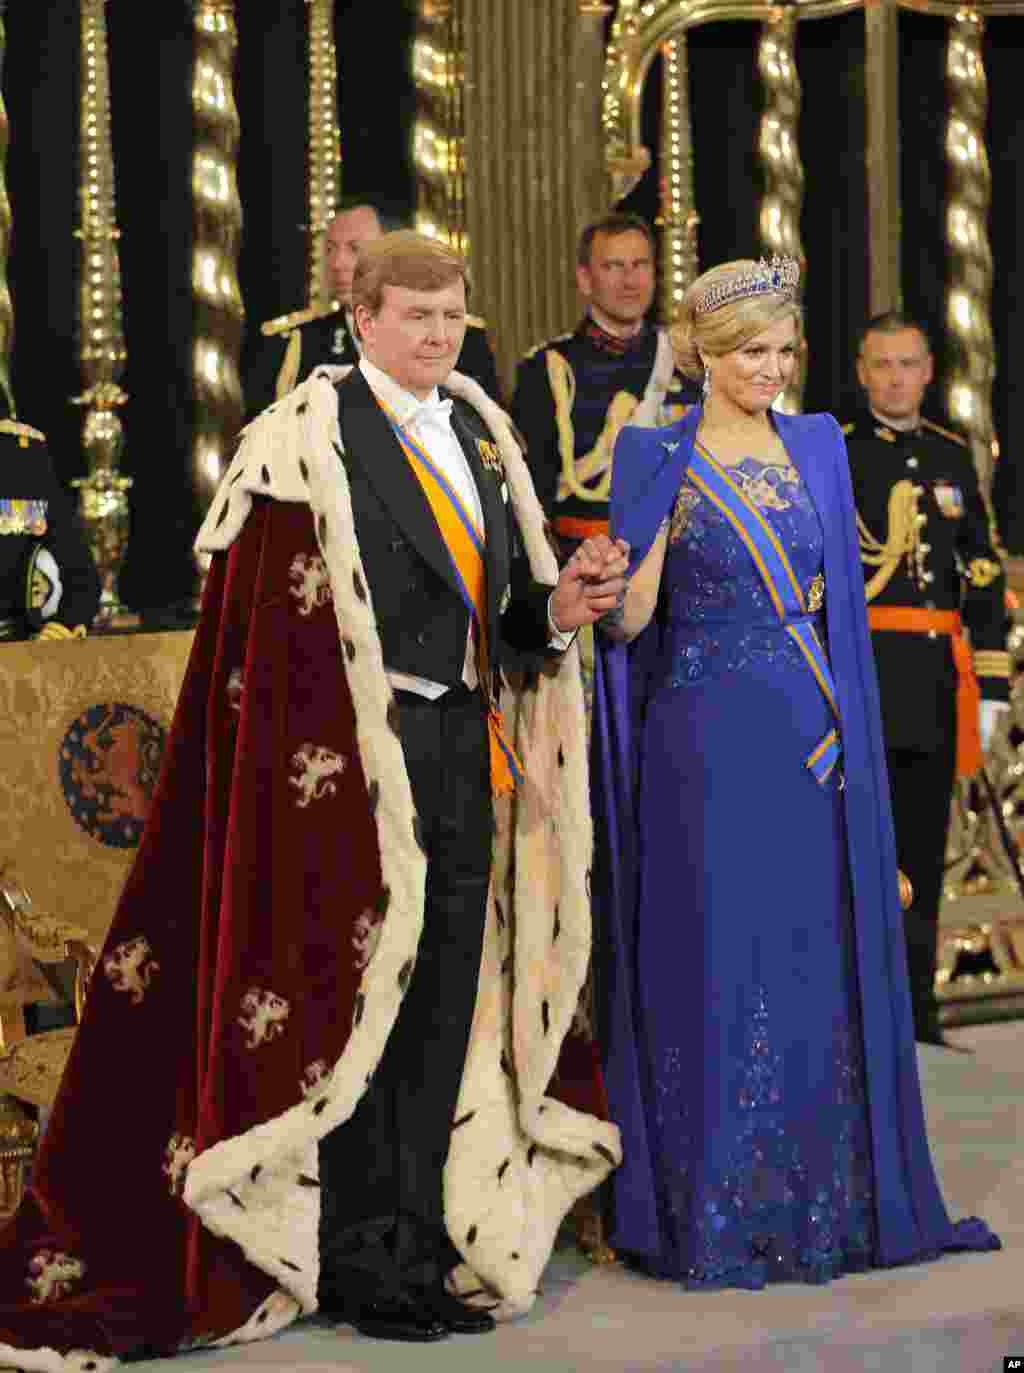 Raja Belanda Willem-Alexander dan Ratu Maxima pada upacara penobatan di Nieuwe Kerk atau Gereja Baru di Amsterdam (30/4).